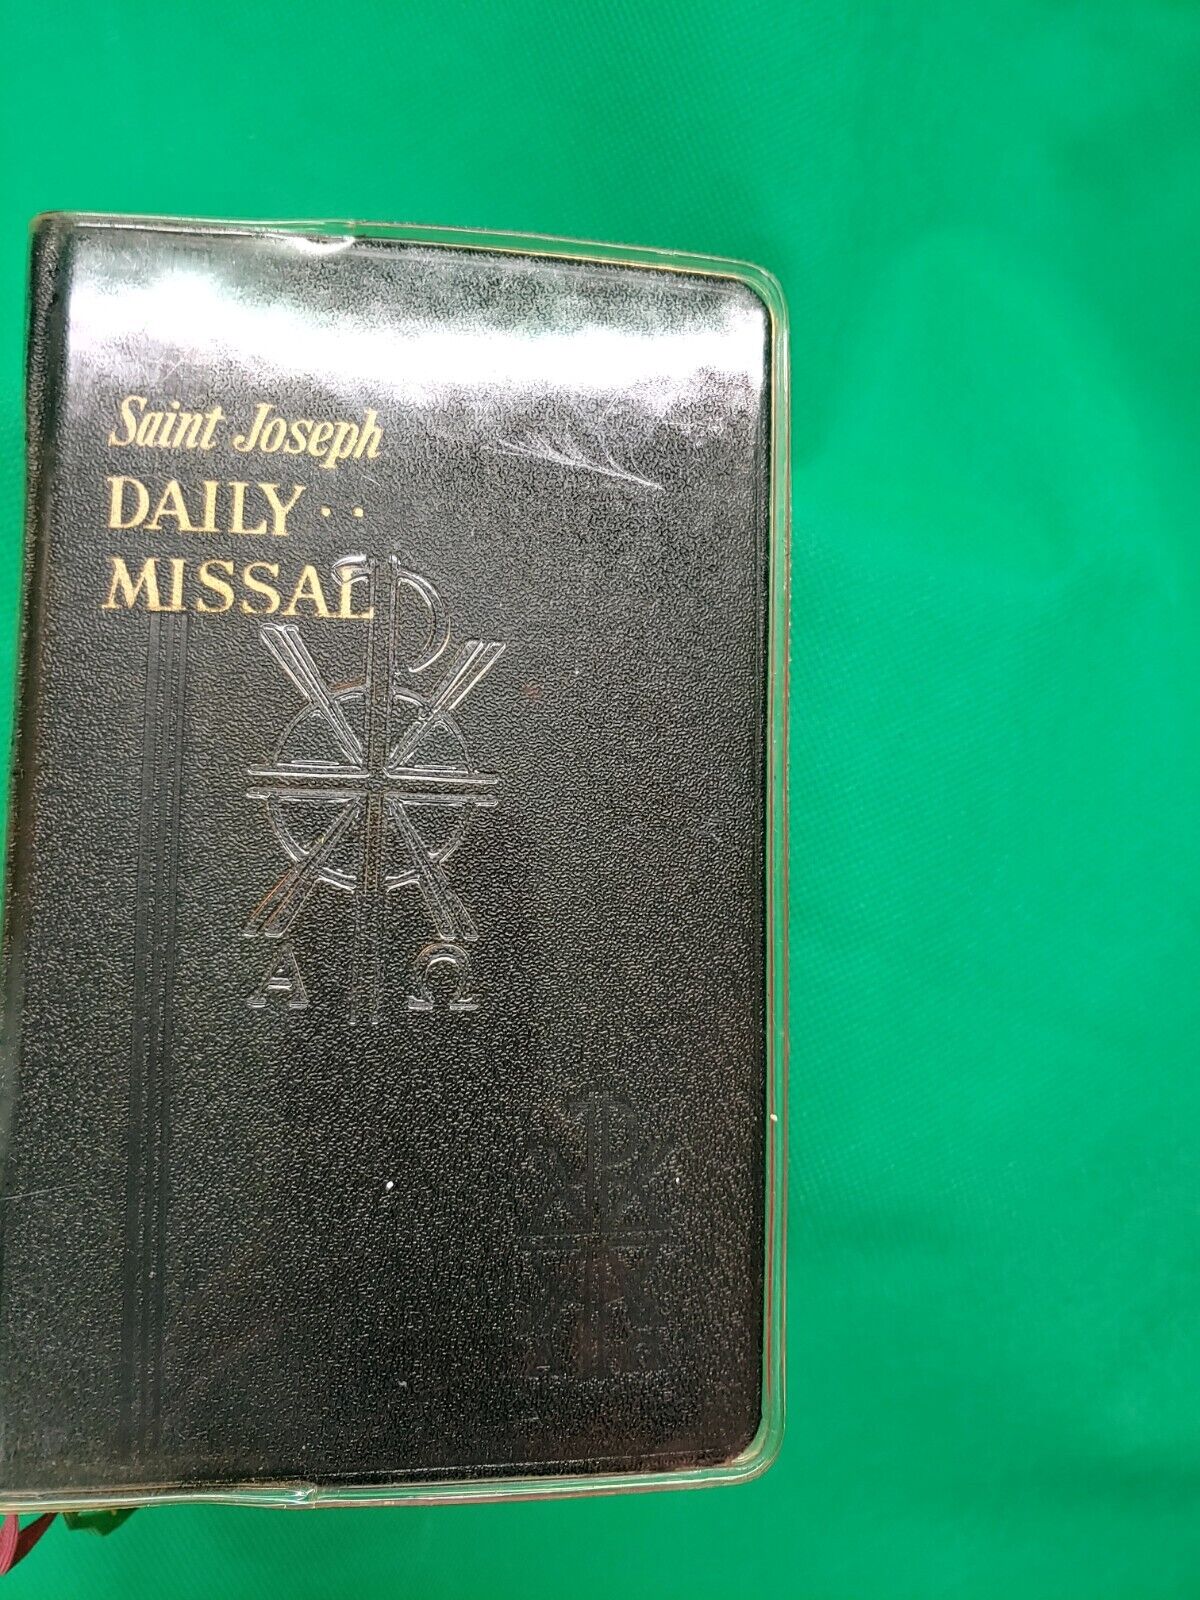 ViTG 1961 Saint Joseph Daily Missal by Rev.Hugo Hoever 